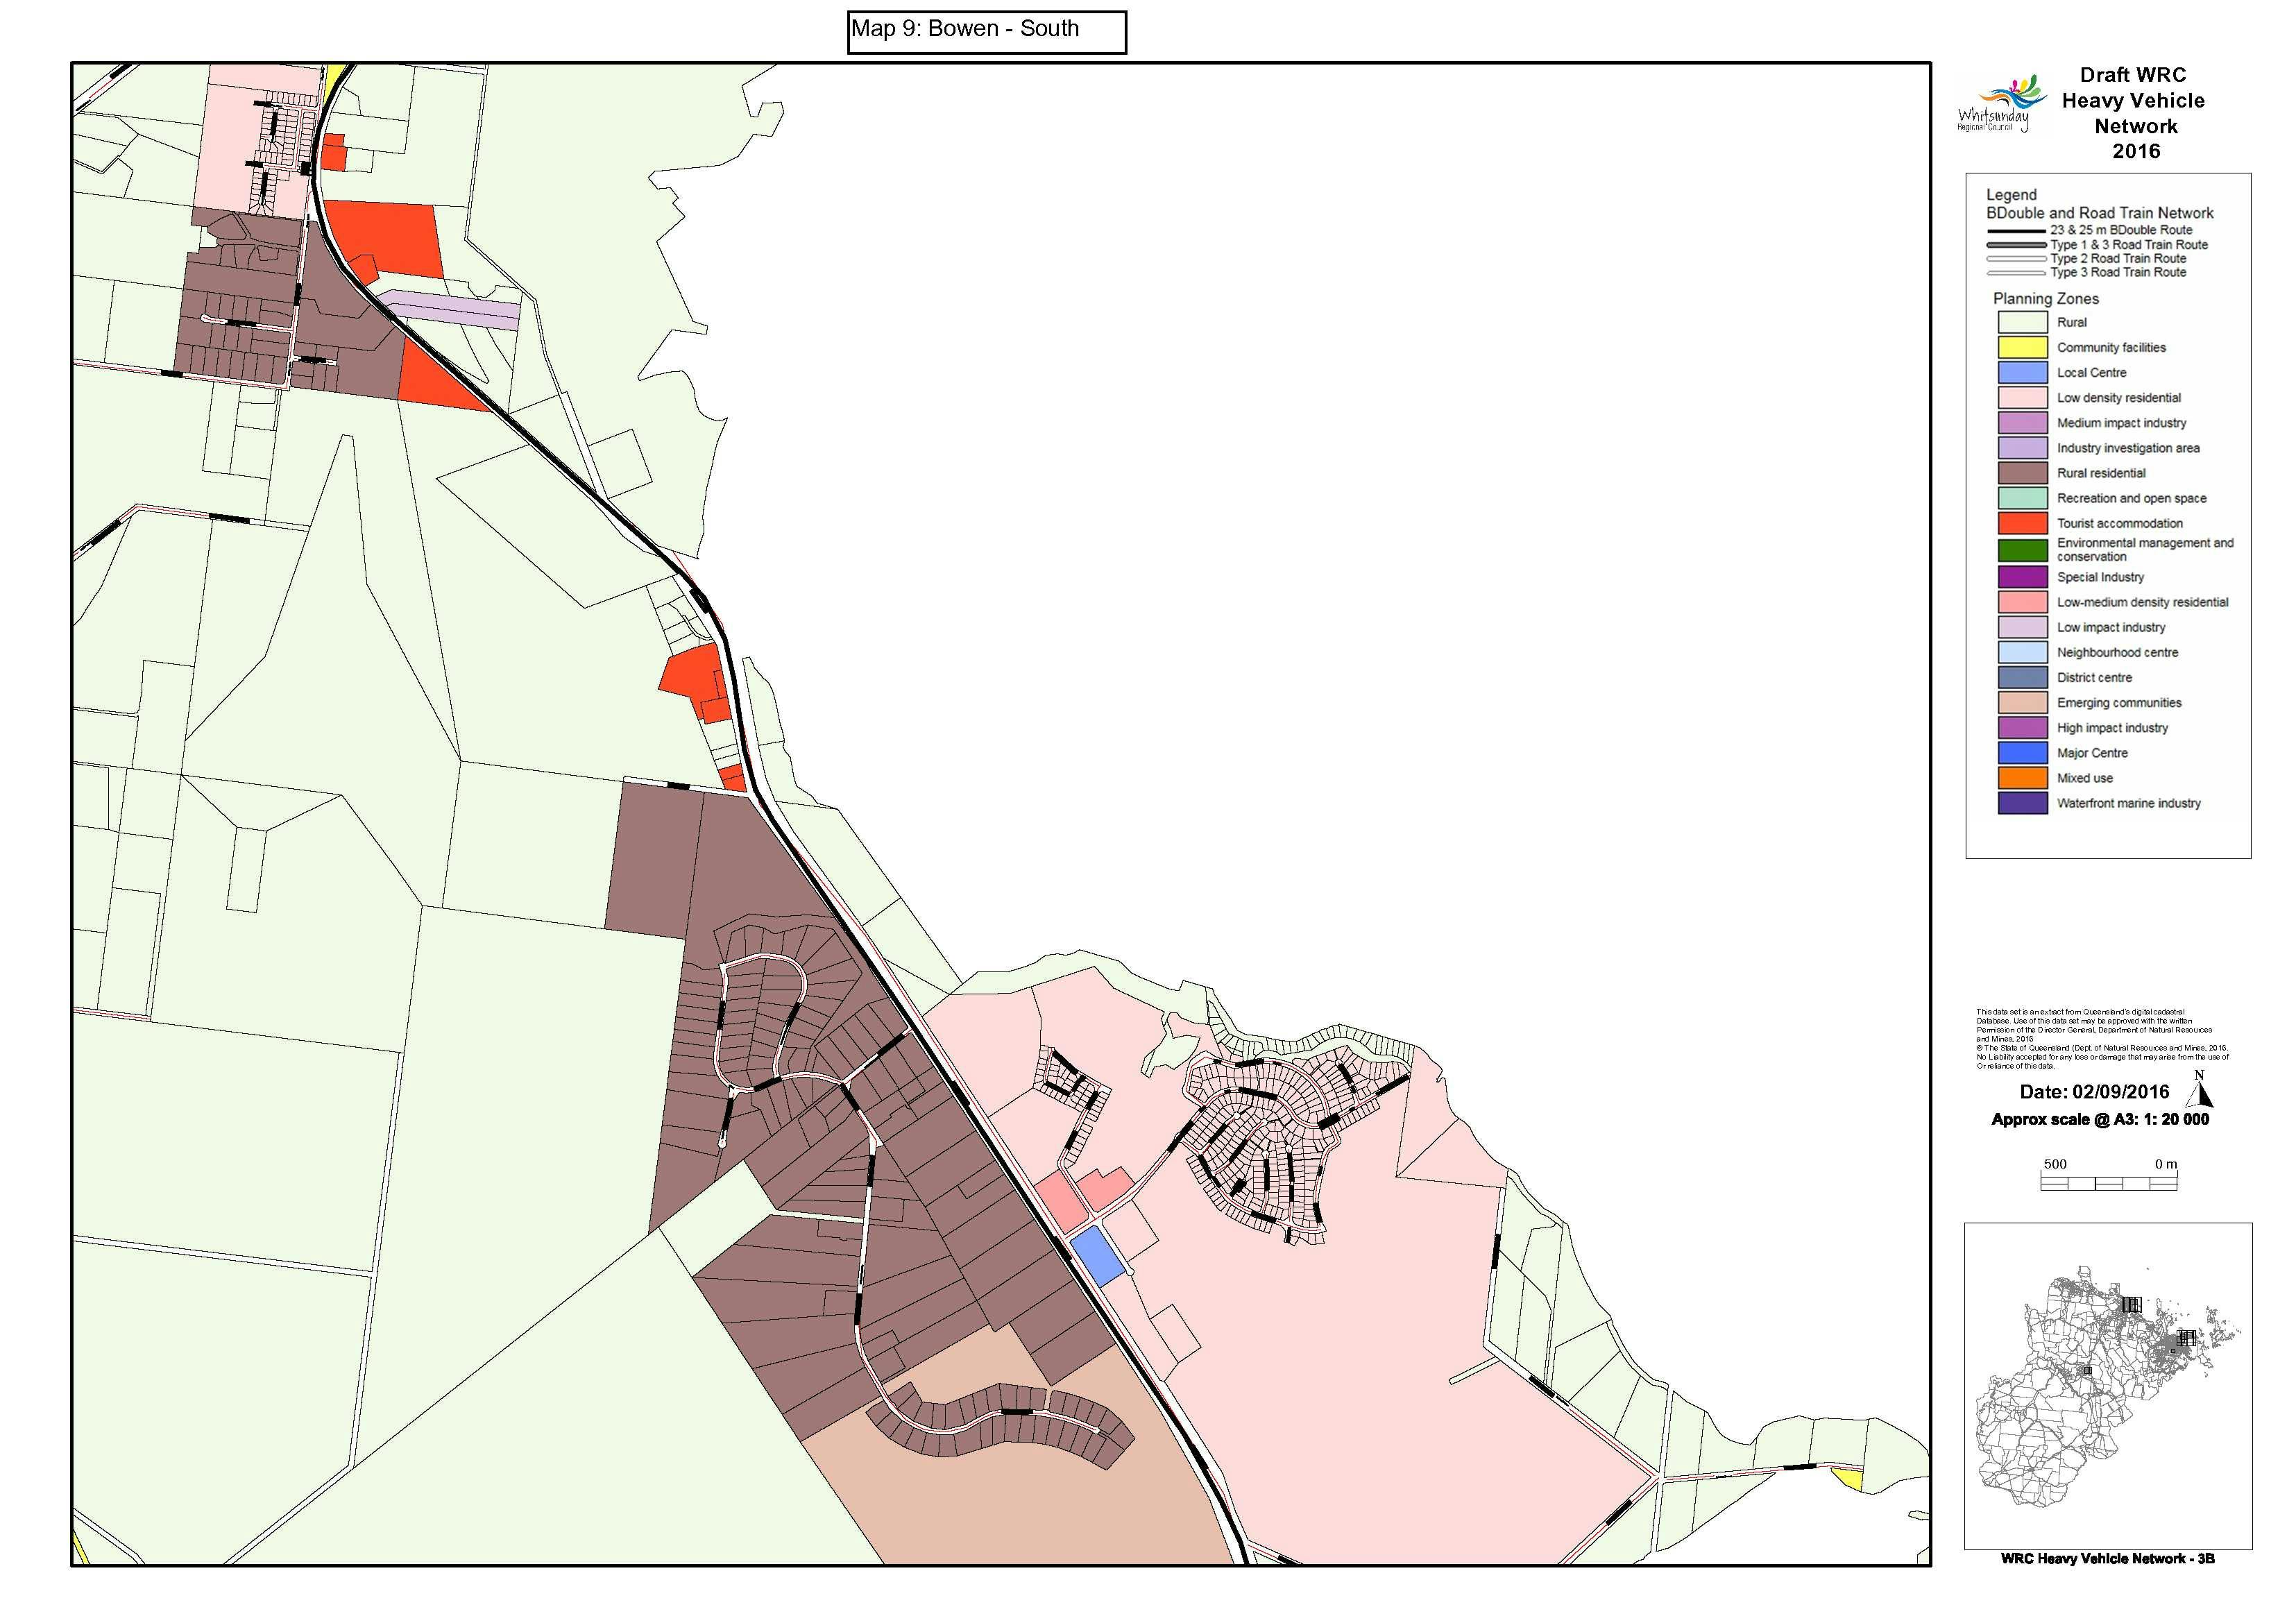 Map 9 - Bowen South